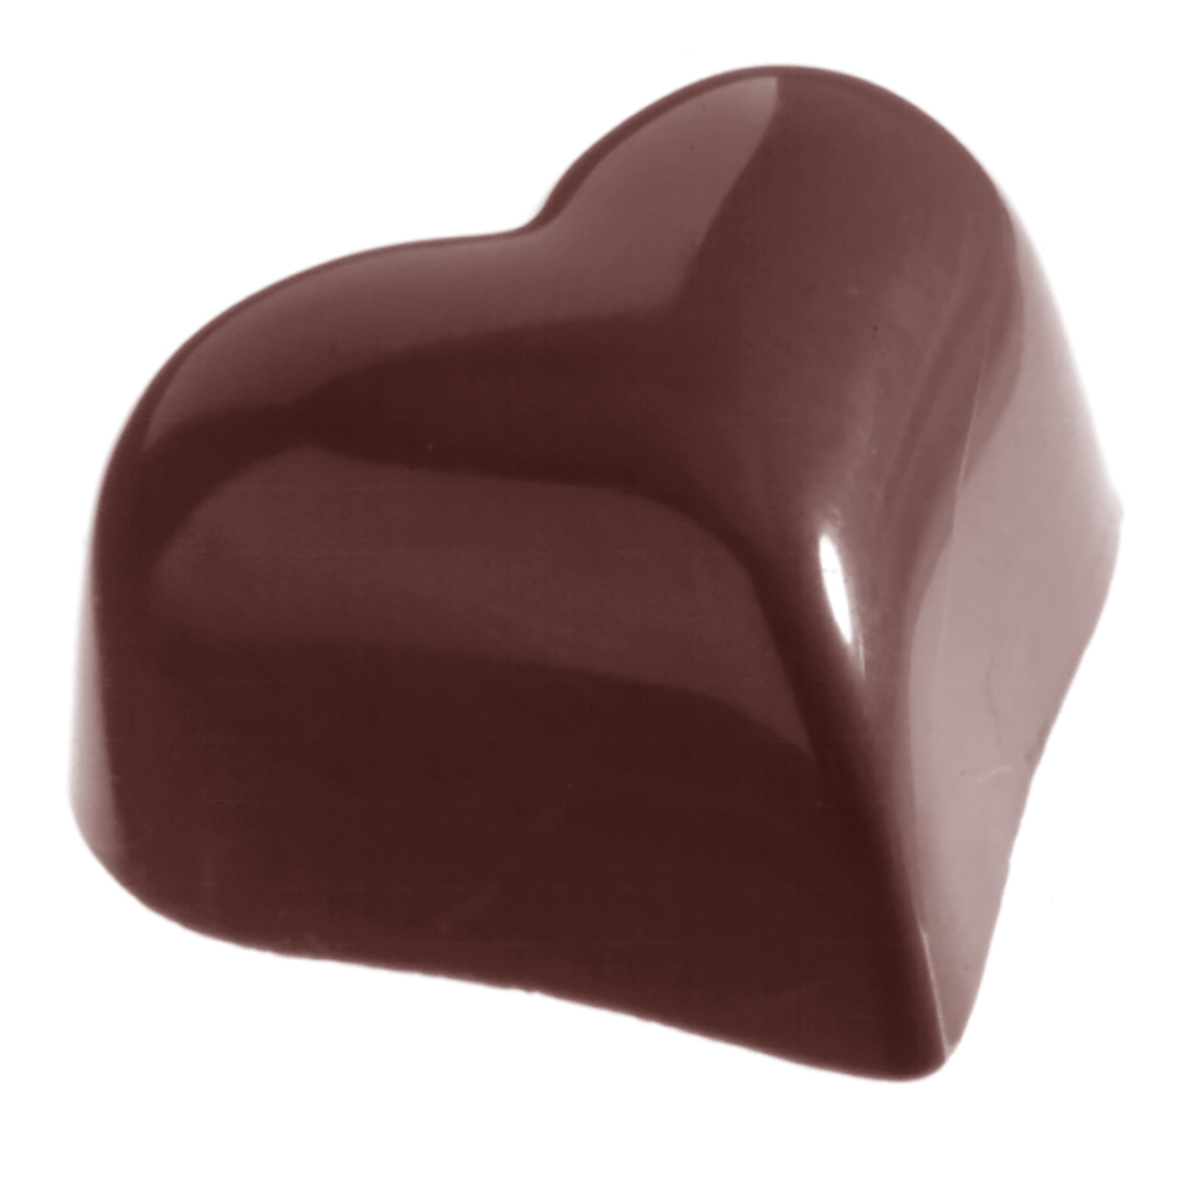 Billede af Professionel chokoladeform i polycarbonat - Small puffy heart 14 g CW1218